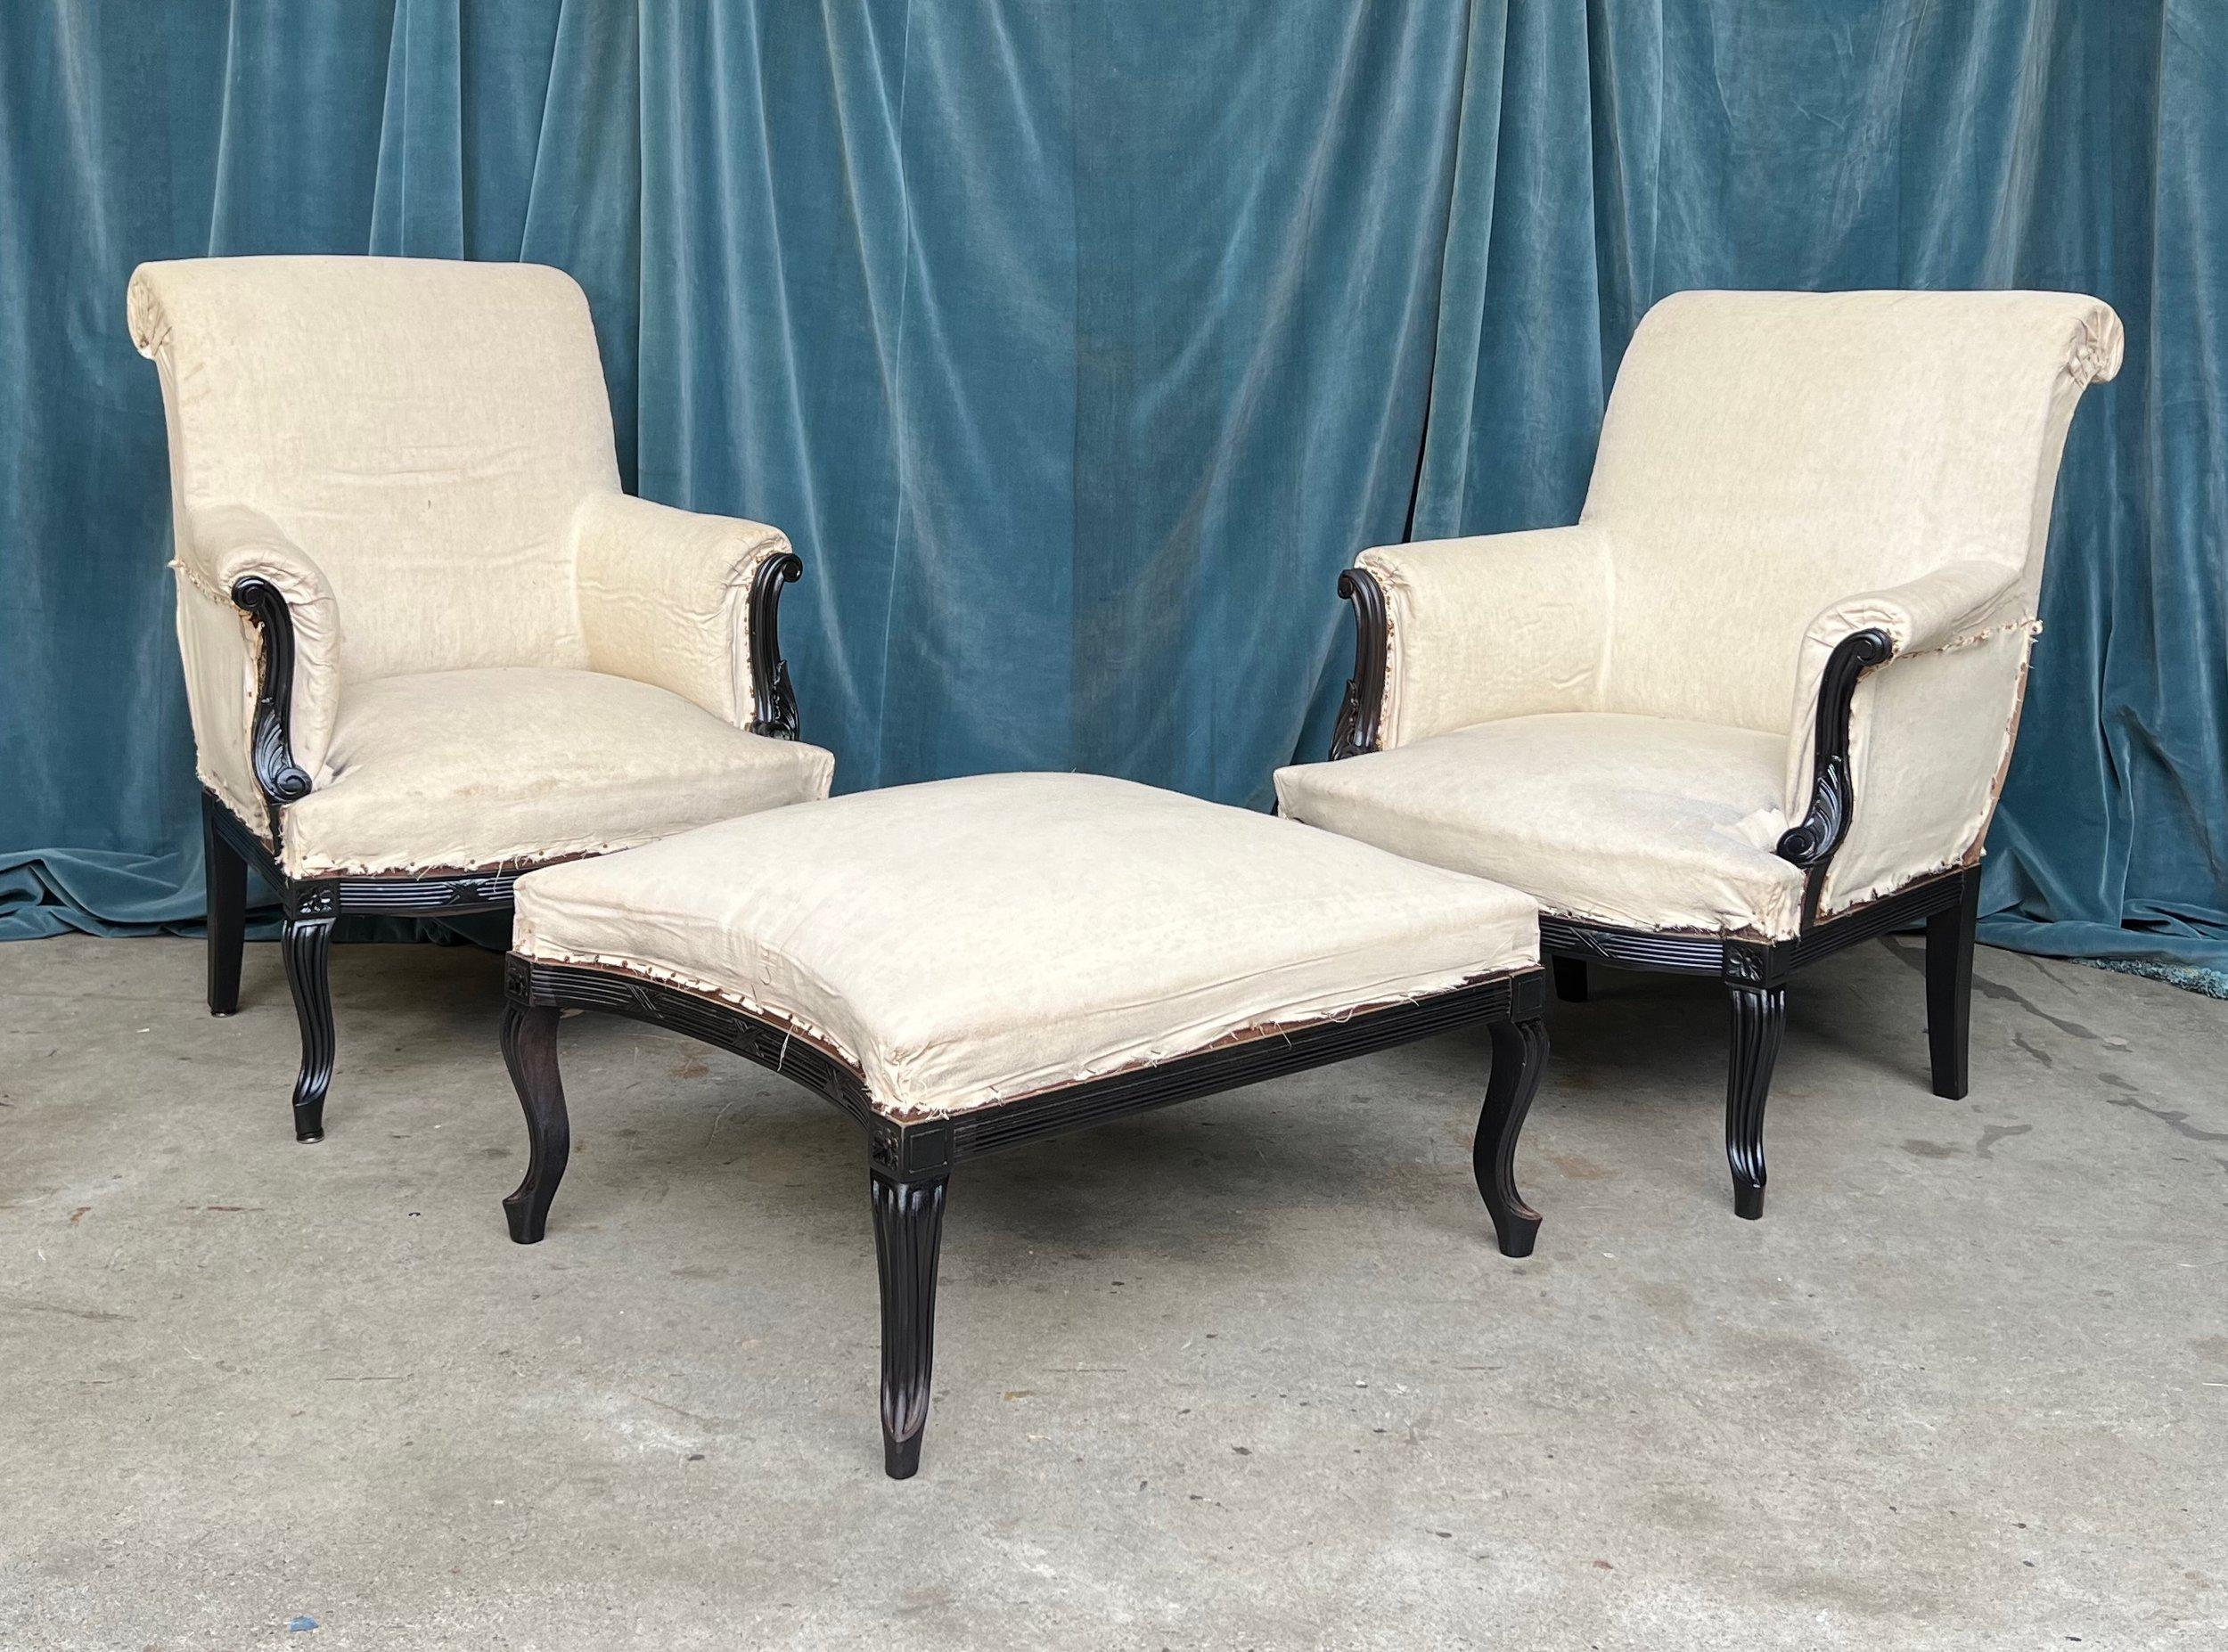 Ce trio saisissant de fauteuils français et d'un ottoman des années 1920 est l'incarnation de l'élégance intemporelle. Les chaises et l'ottoman témoignent d'un art raffiné, avec des structures en bois sculptées de manière complexe et fraîchement